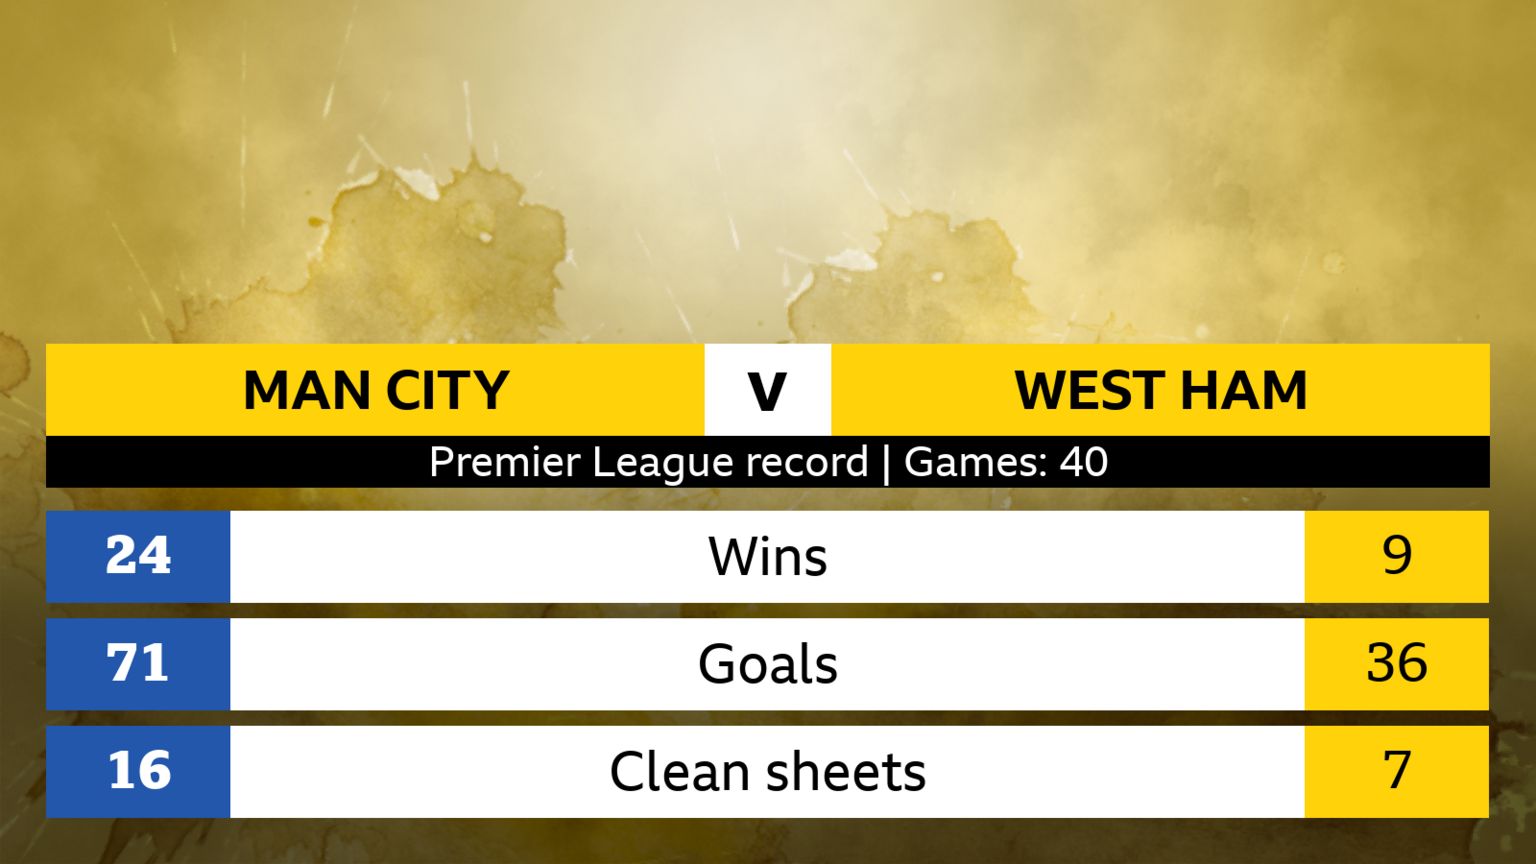 Premier League record, 40 games. City 24 wins 71 goals 16 clean sheets. West Ham 9 wins 36 goals 7 clean sheets